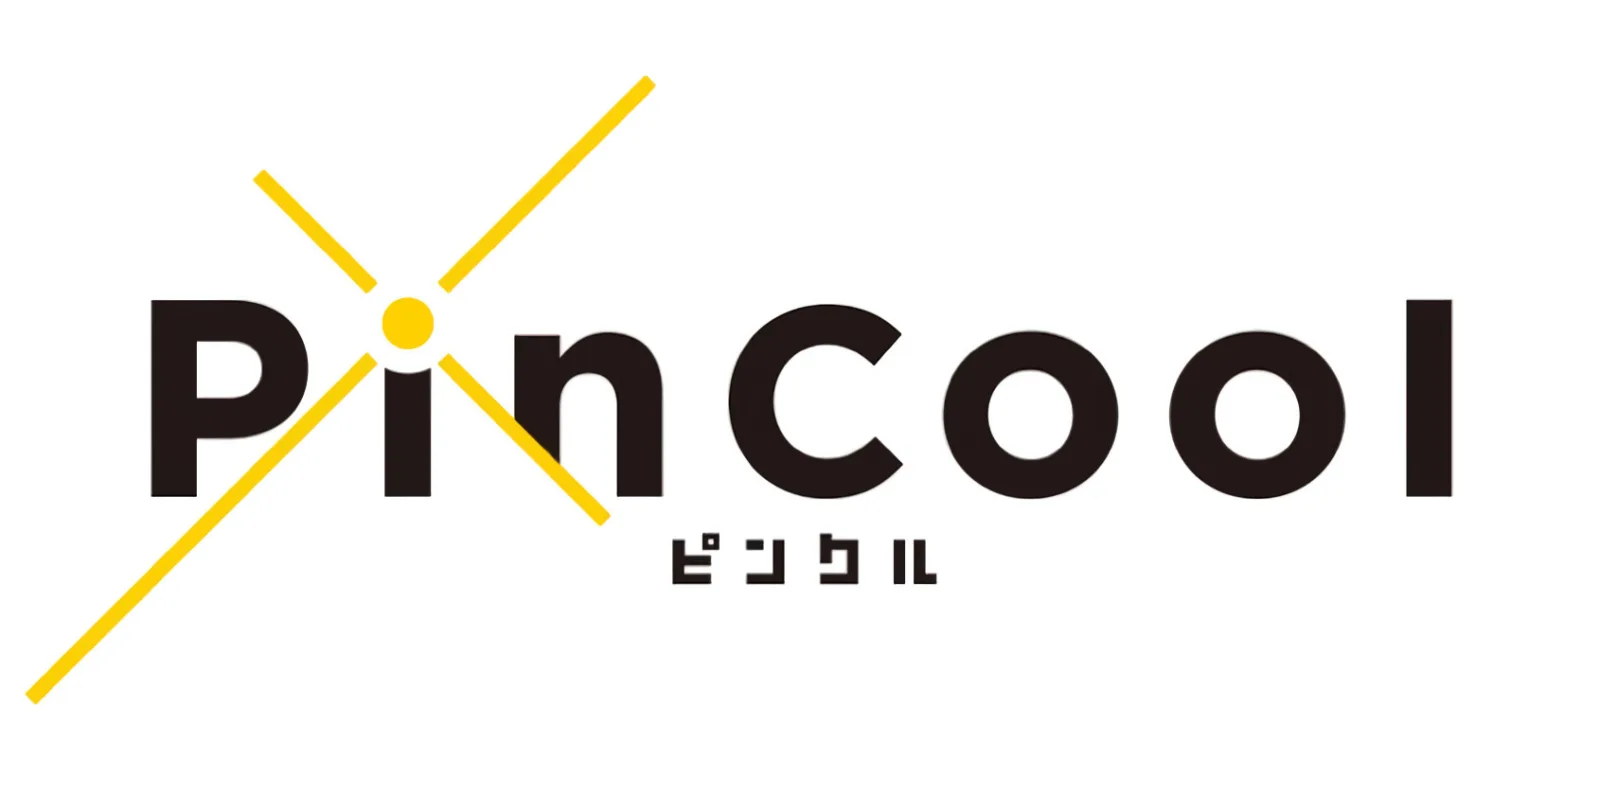 原《勇者斗恶龙》制作人市村龙太郎携手网易，成立新公司“PinCool”